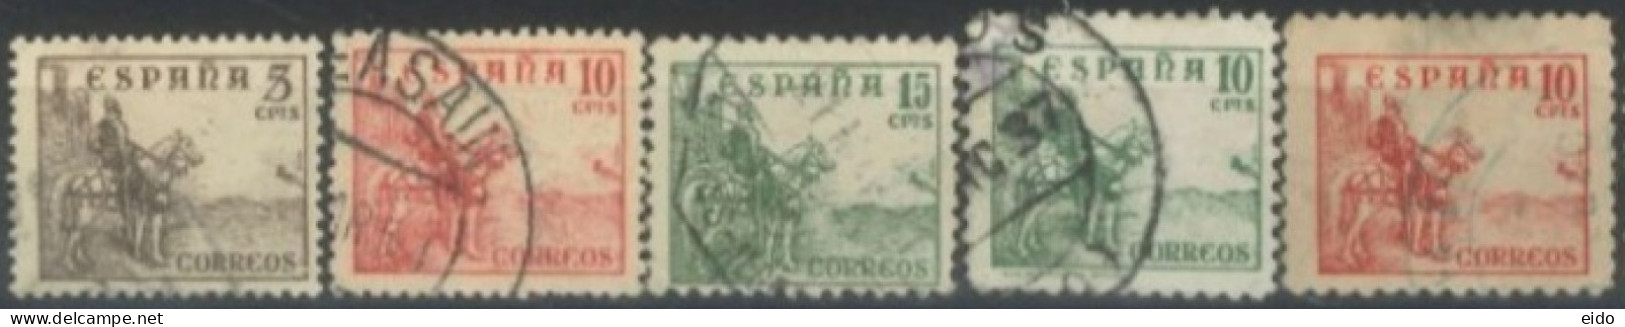 SPAIN, 1936/40, EL CID STAMPS SET OF 5, USED. - Used Stamps